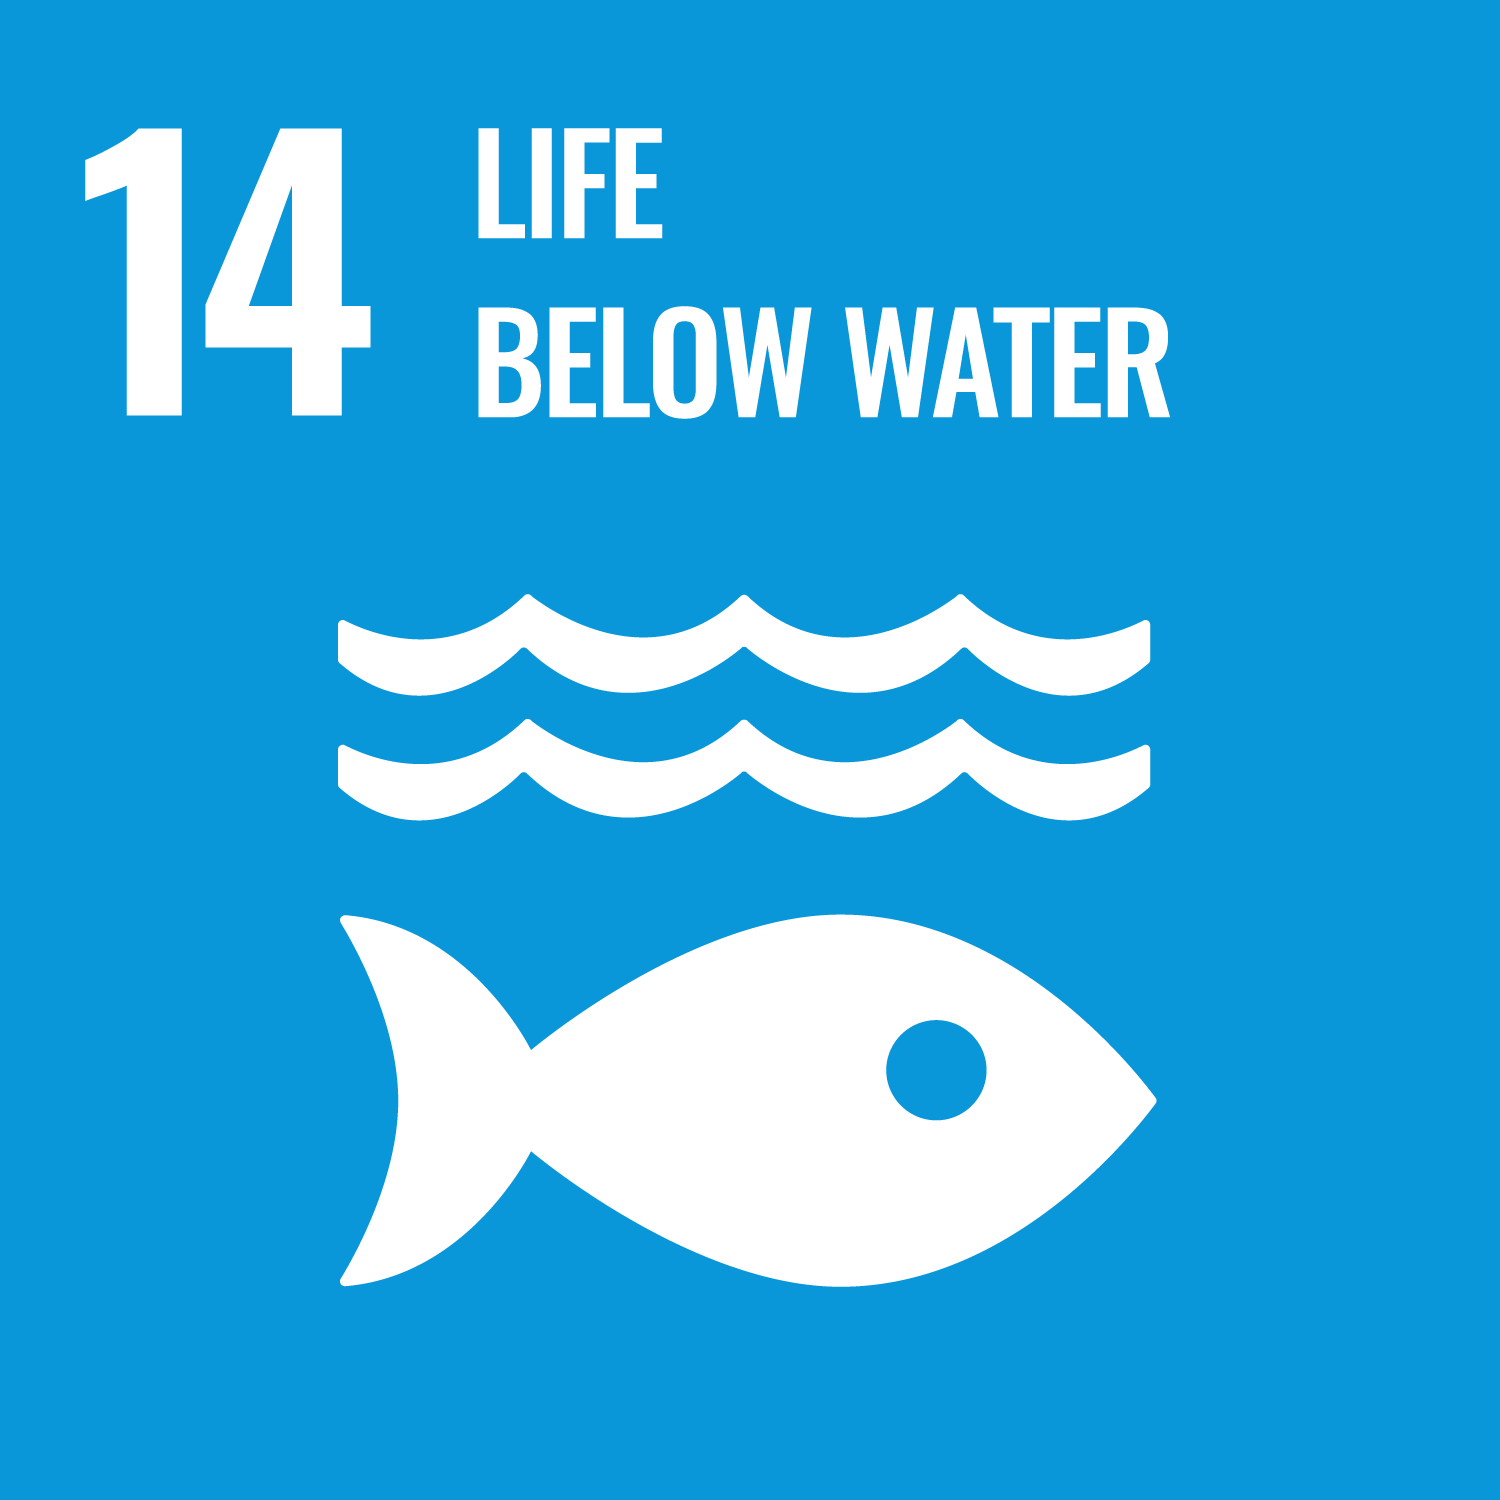 Sustainable Development Goal #14 (Life Below Water)